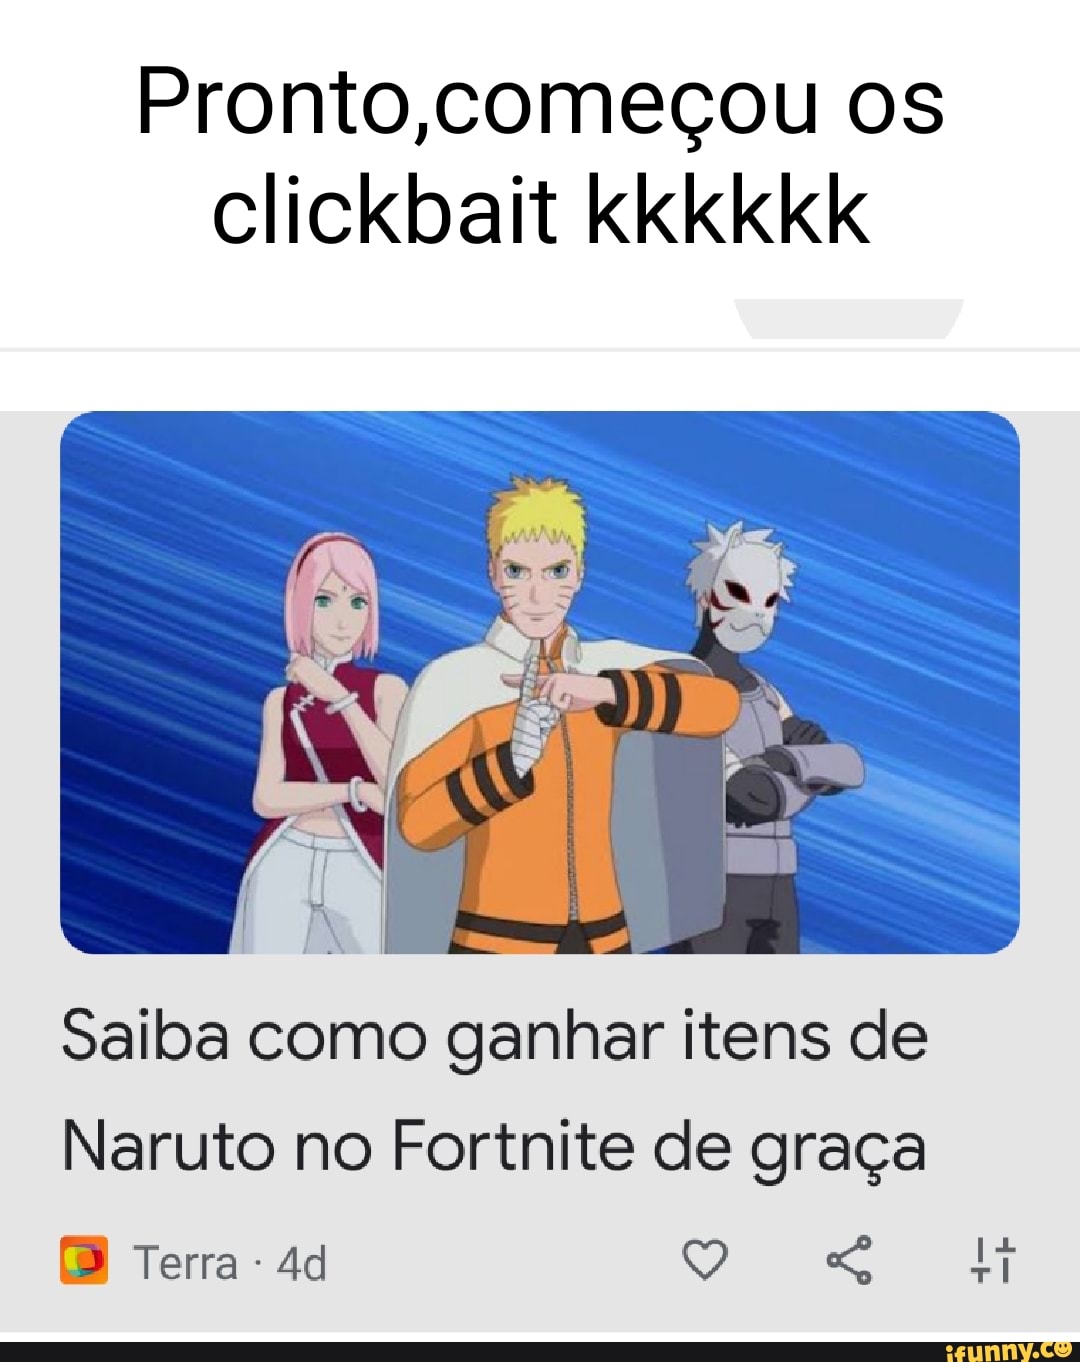 Saiba como ganhar itens de Naruto no Fortnite de graça